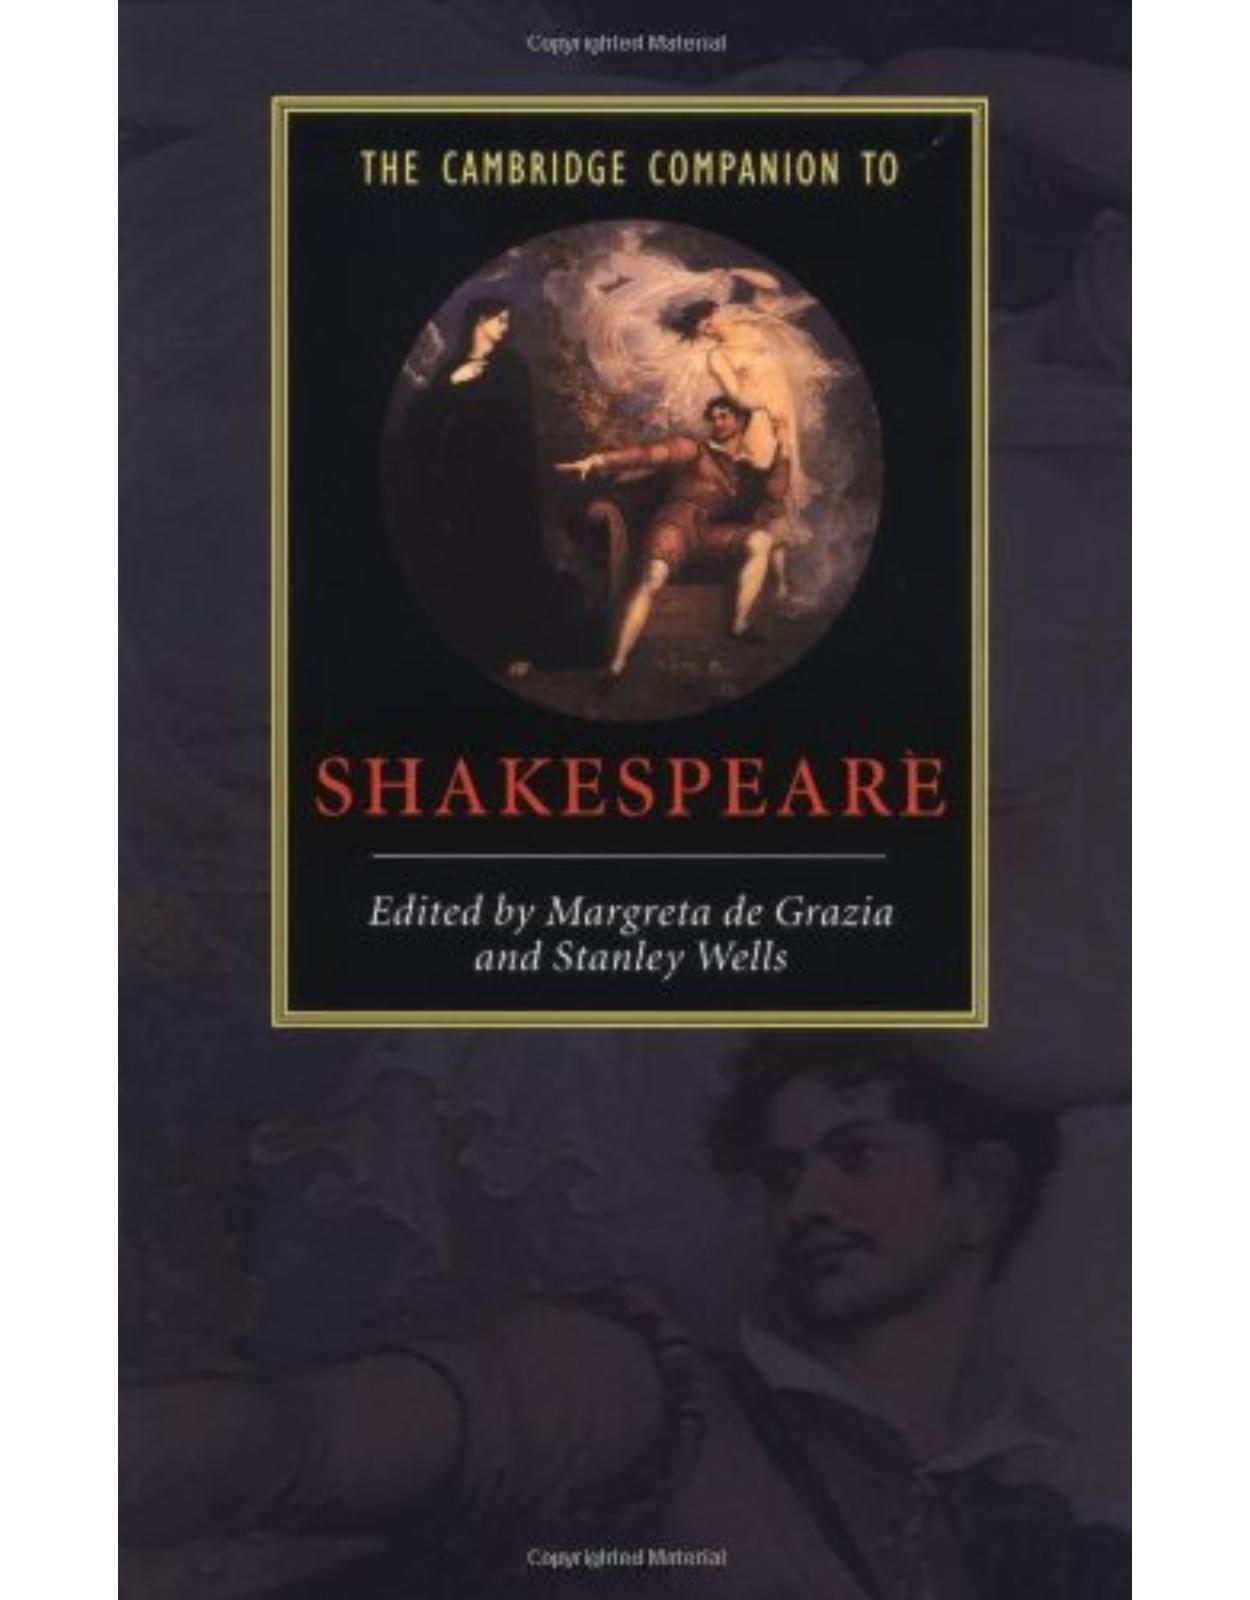 The Cambridge Companion to Shakespeare (Cambridge Companions to Literature)